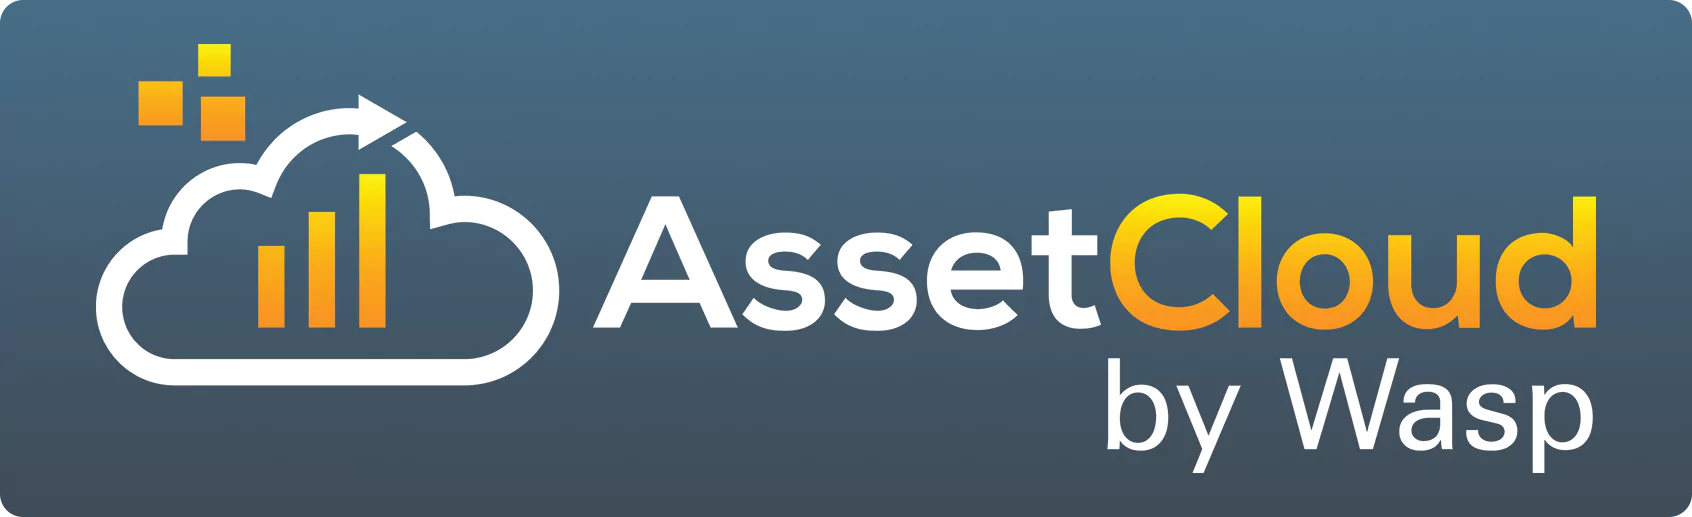 asset-cloud-logo-on-blue